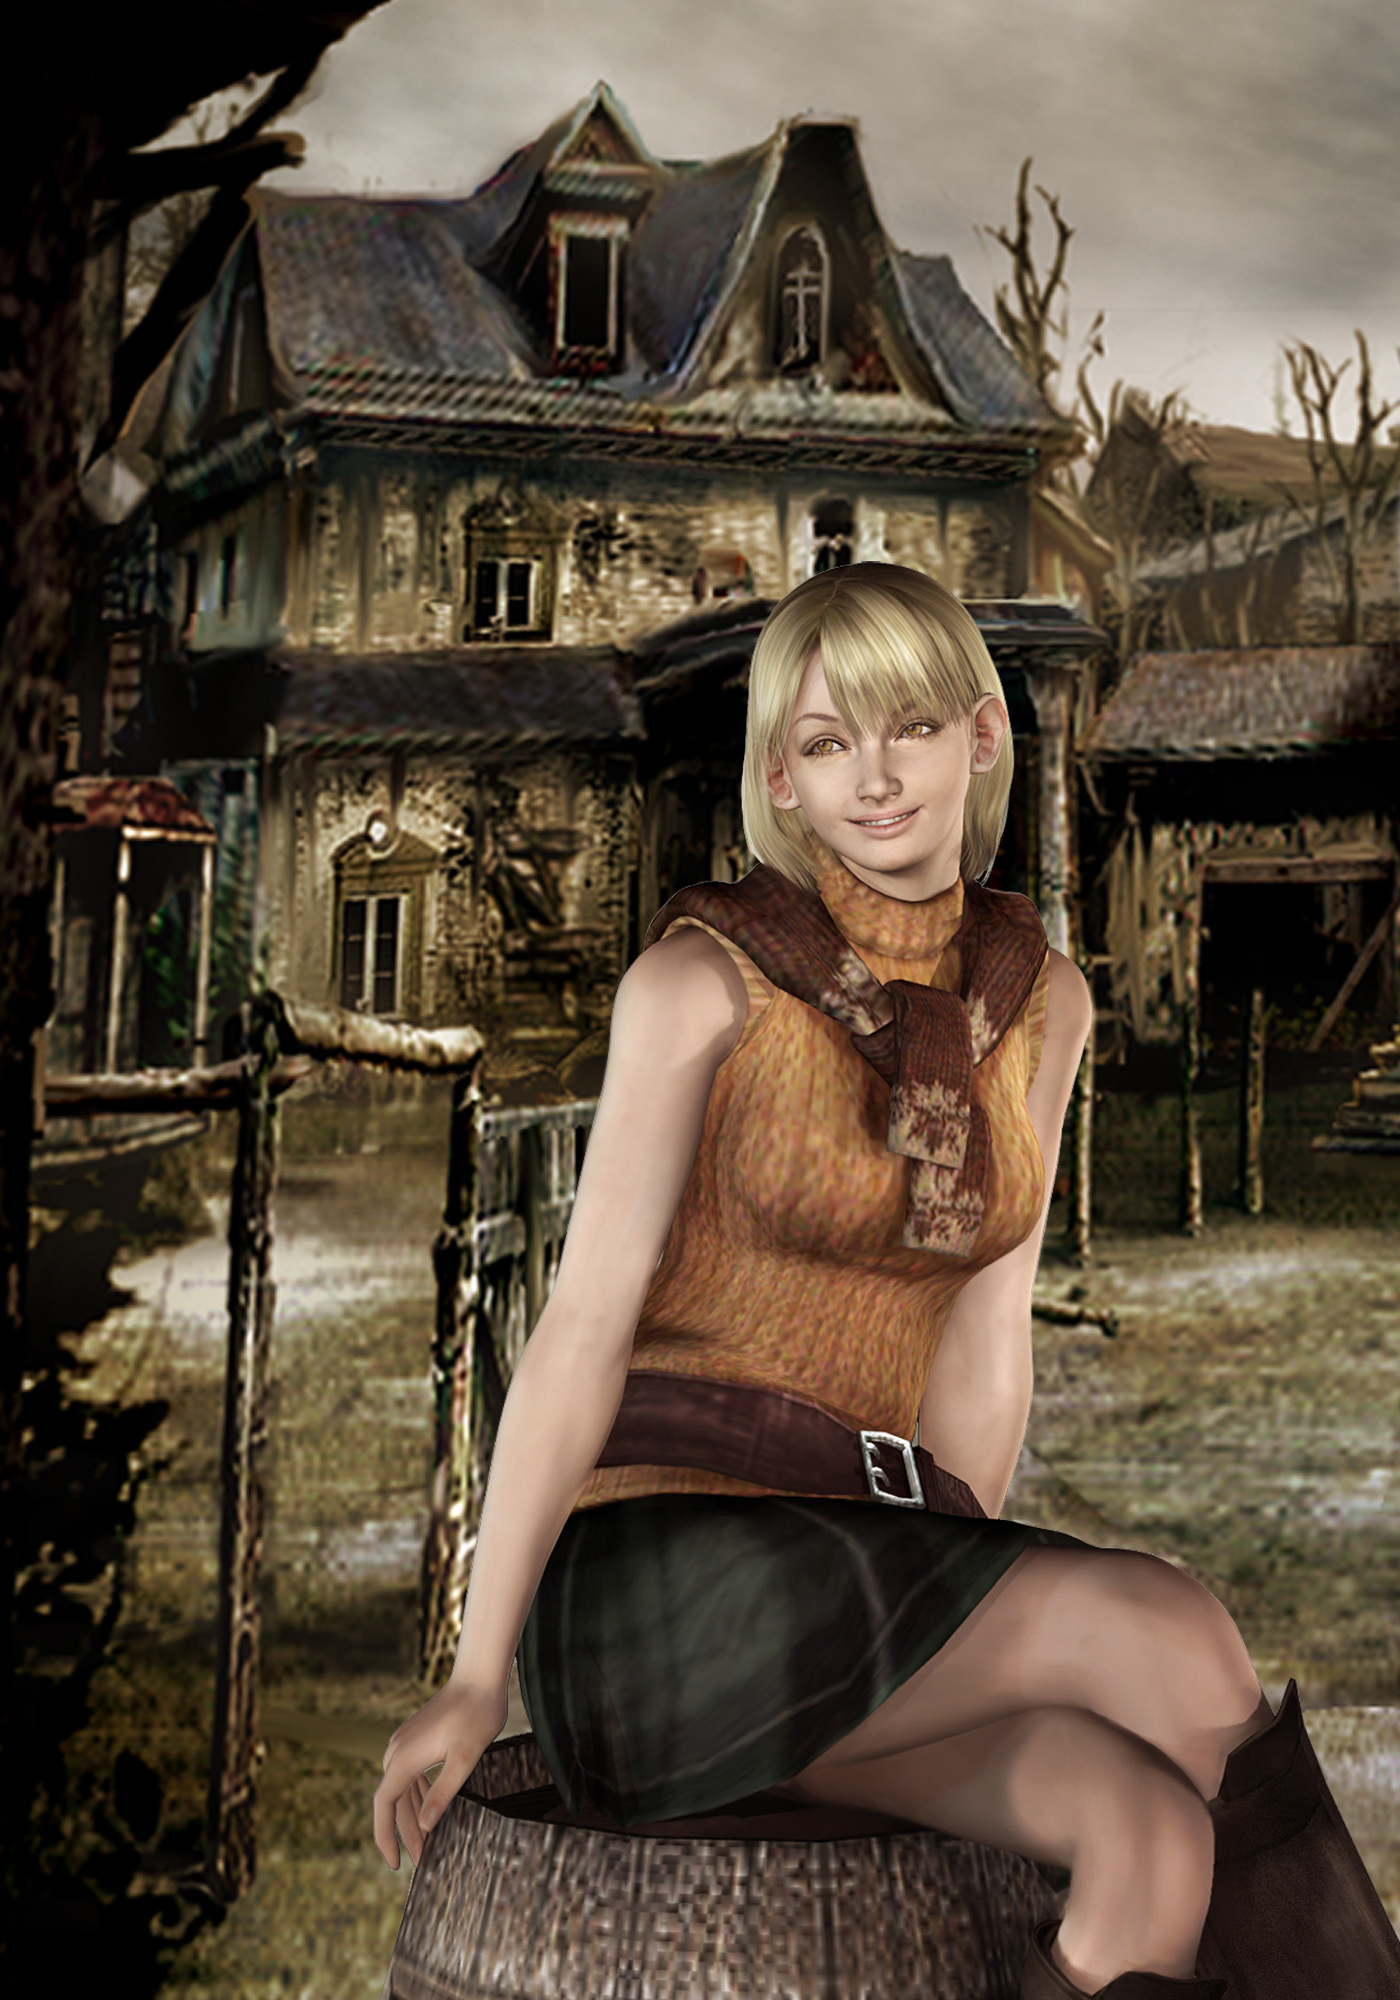 Image Resident Evil 4 Artwork Ashley Graham Presidents Daughter Resident Evil Wiki 3186